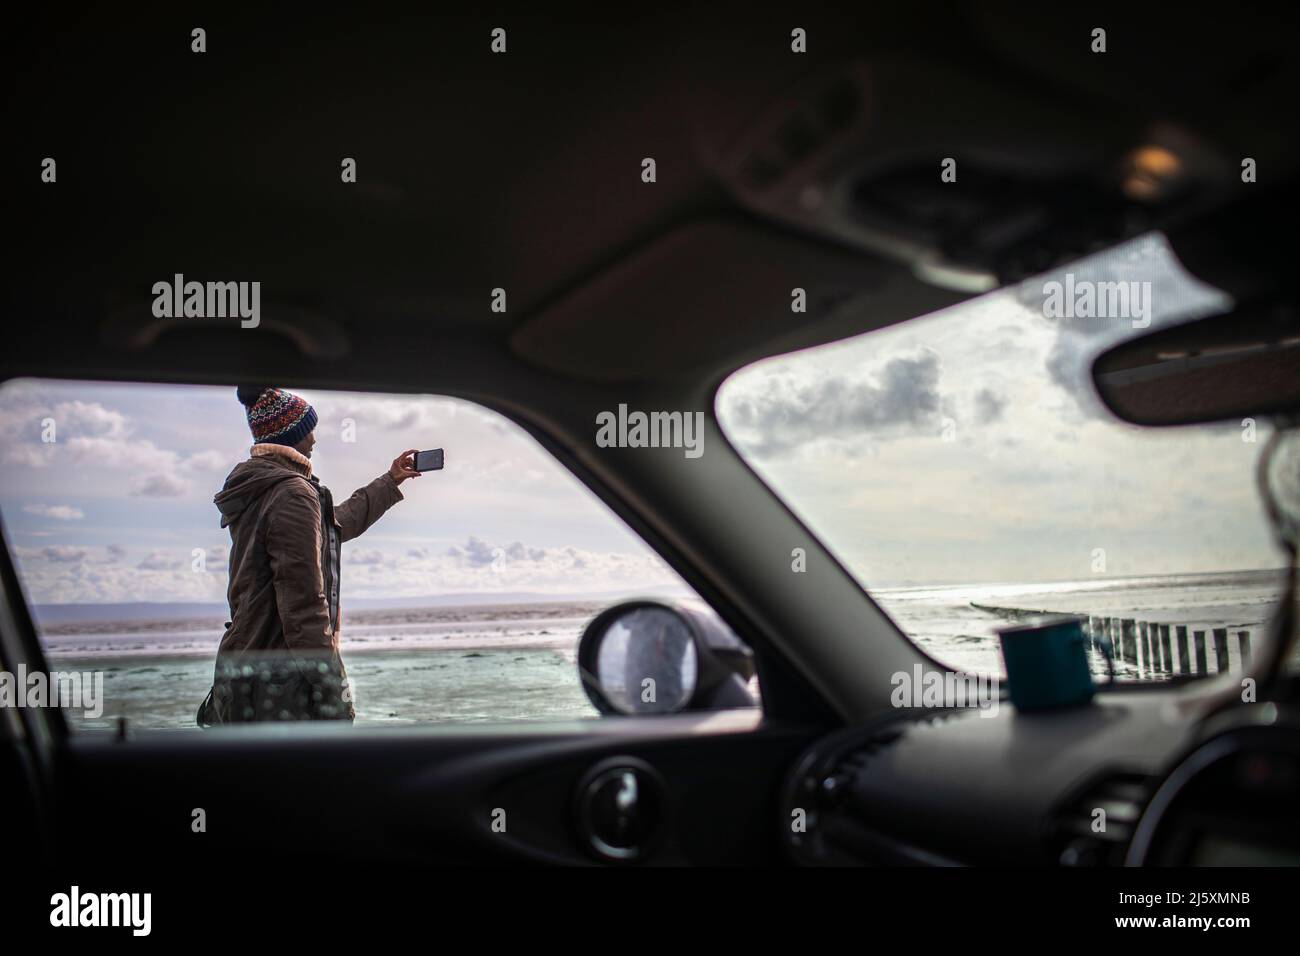 Homme avec appareil photo sur la plage d'hiver en dehors de la voiture Banque D'Images